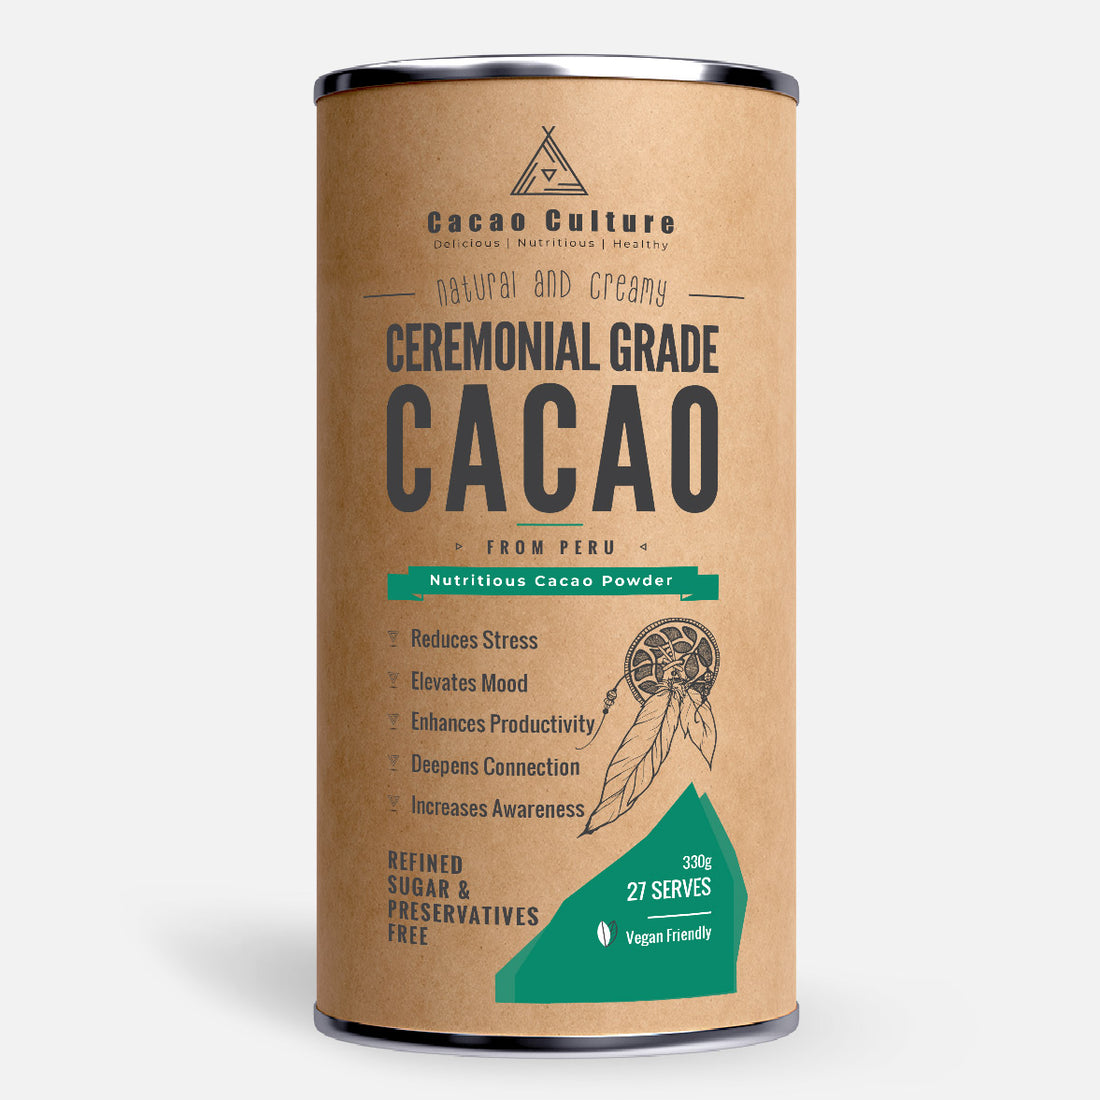 Ceremonial Grade Cacao Powder